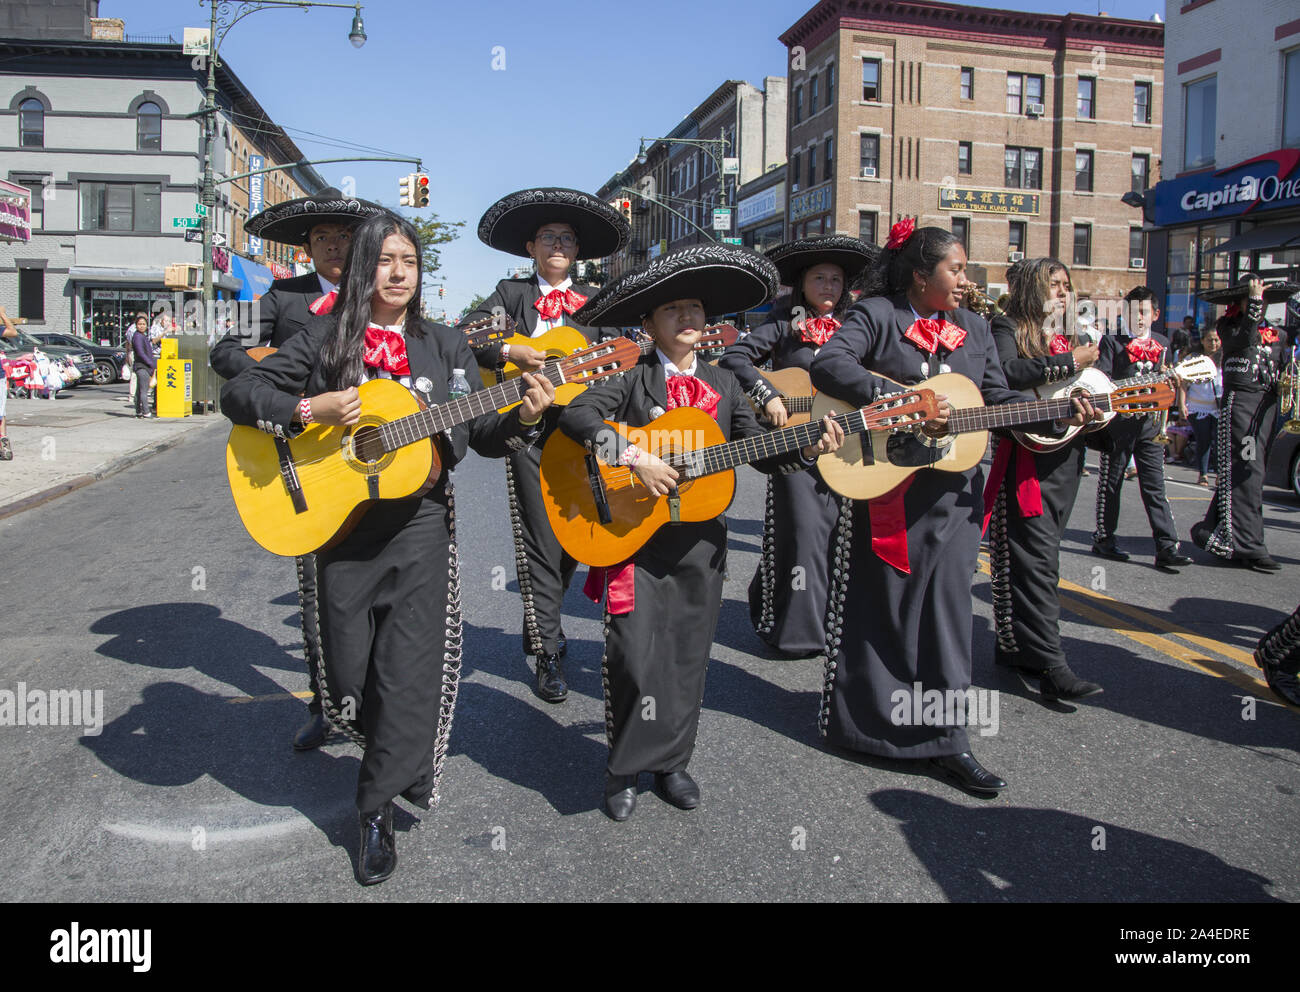 Die mexikanische Independence Day Parade in Sunset Park, Brooklyn, NY, einem Viertel mit einer großen mexikanischen und der hispanischen Bevölkerung aus anderen Lateinamerikanischen Ländern. Stockfoto